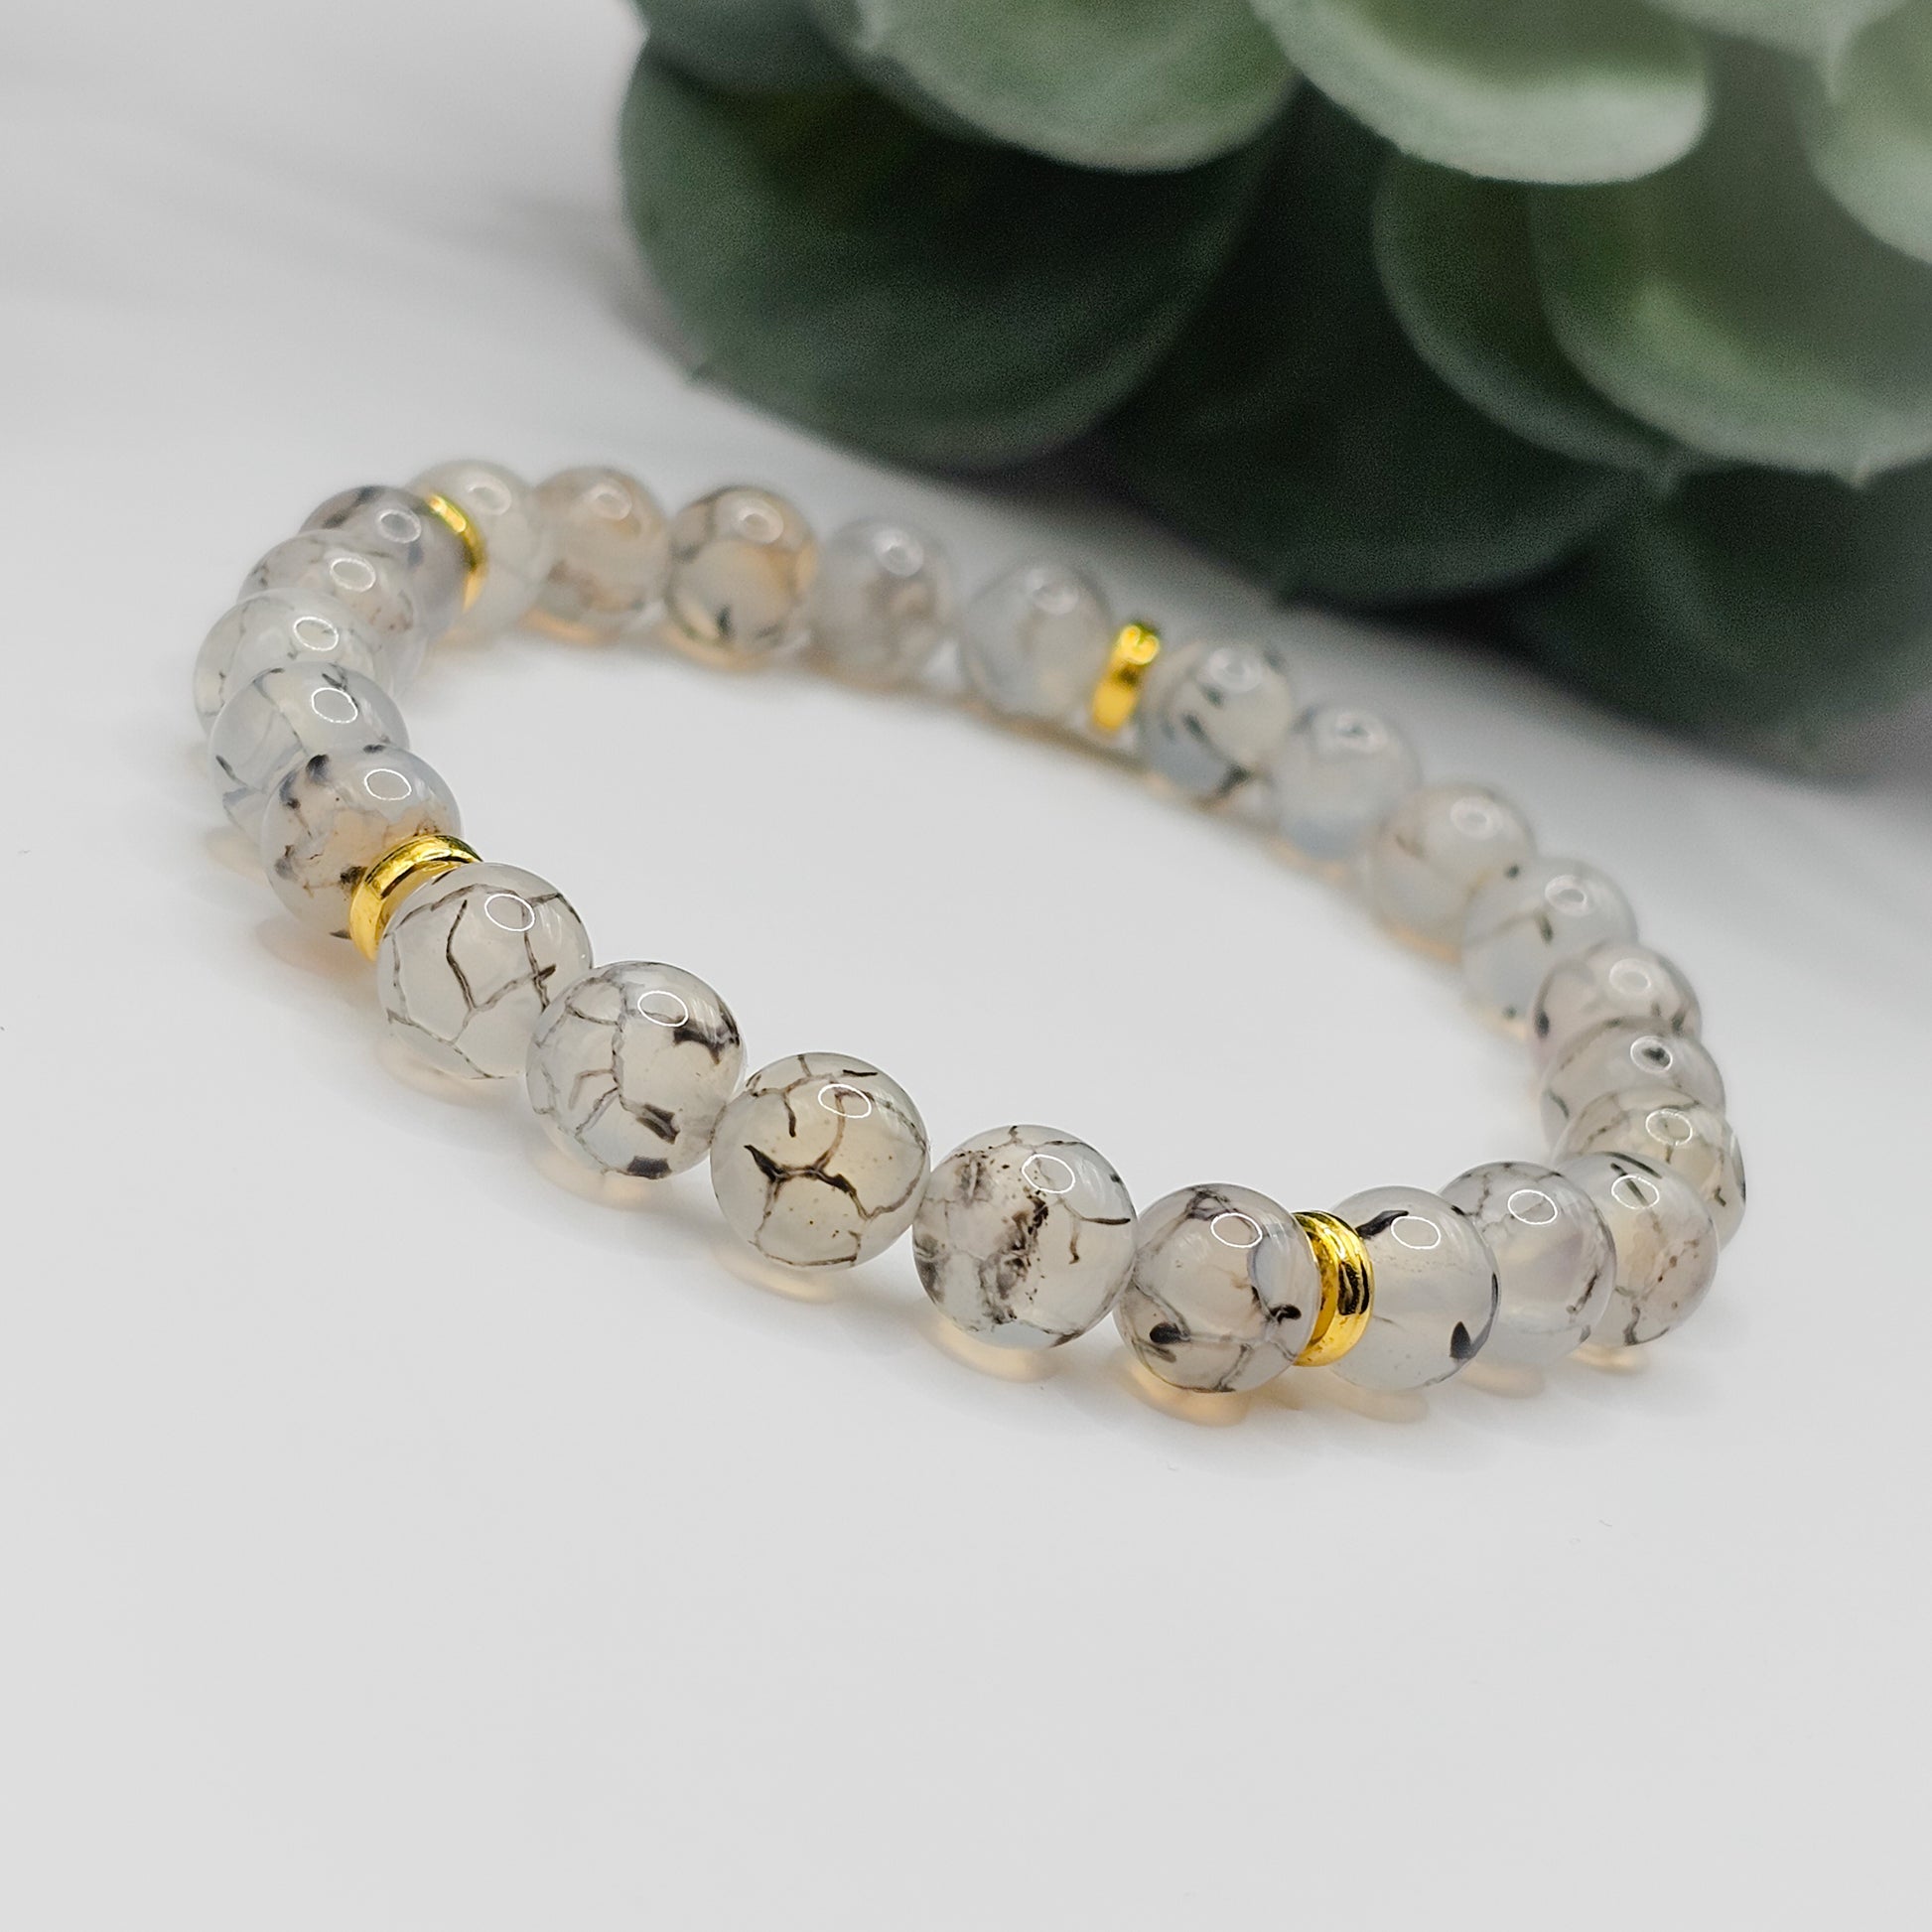 Dragon Vein Agate bead handmade bracelet | gemstone jewellery, crystal jewellery, mens bracelet, gift for men, bracelet gift australia melbourne